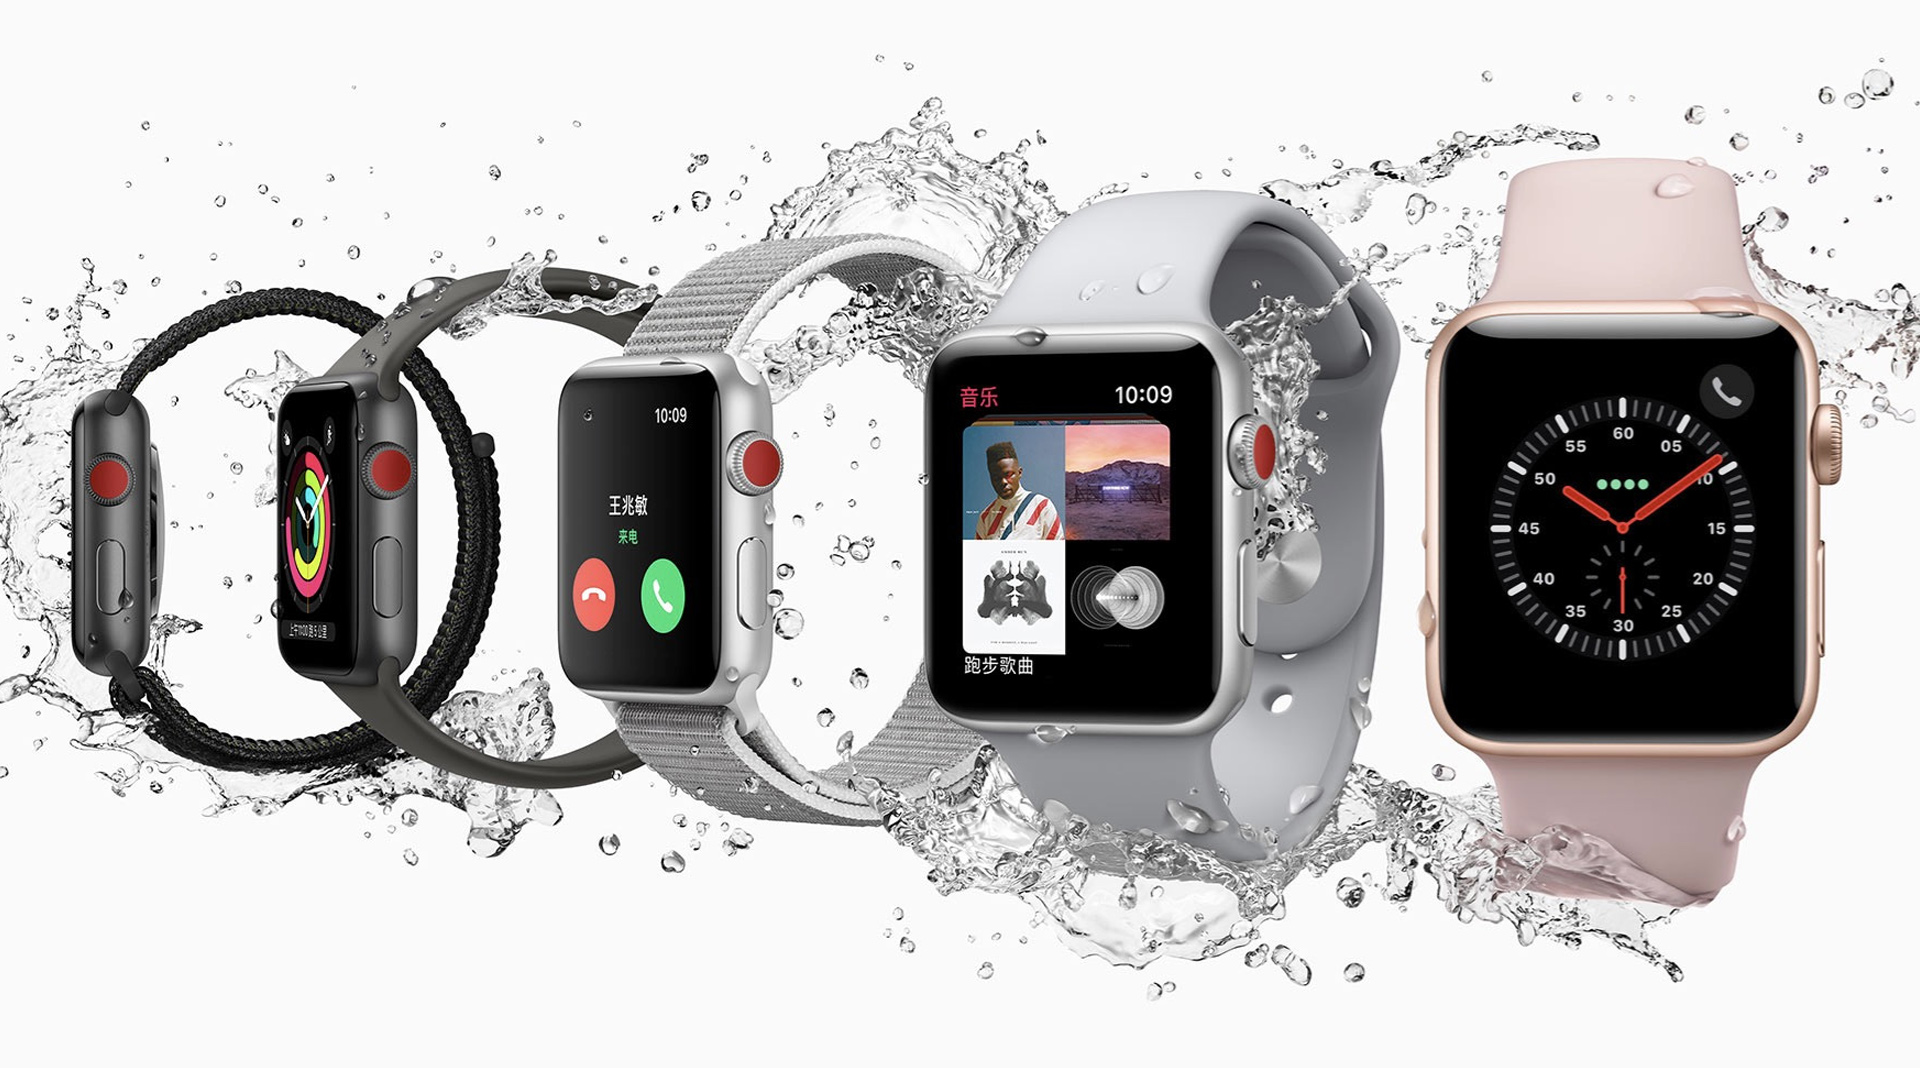 Apple Watch Series 3 models